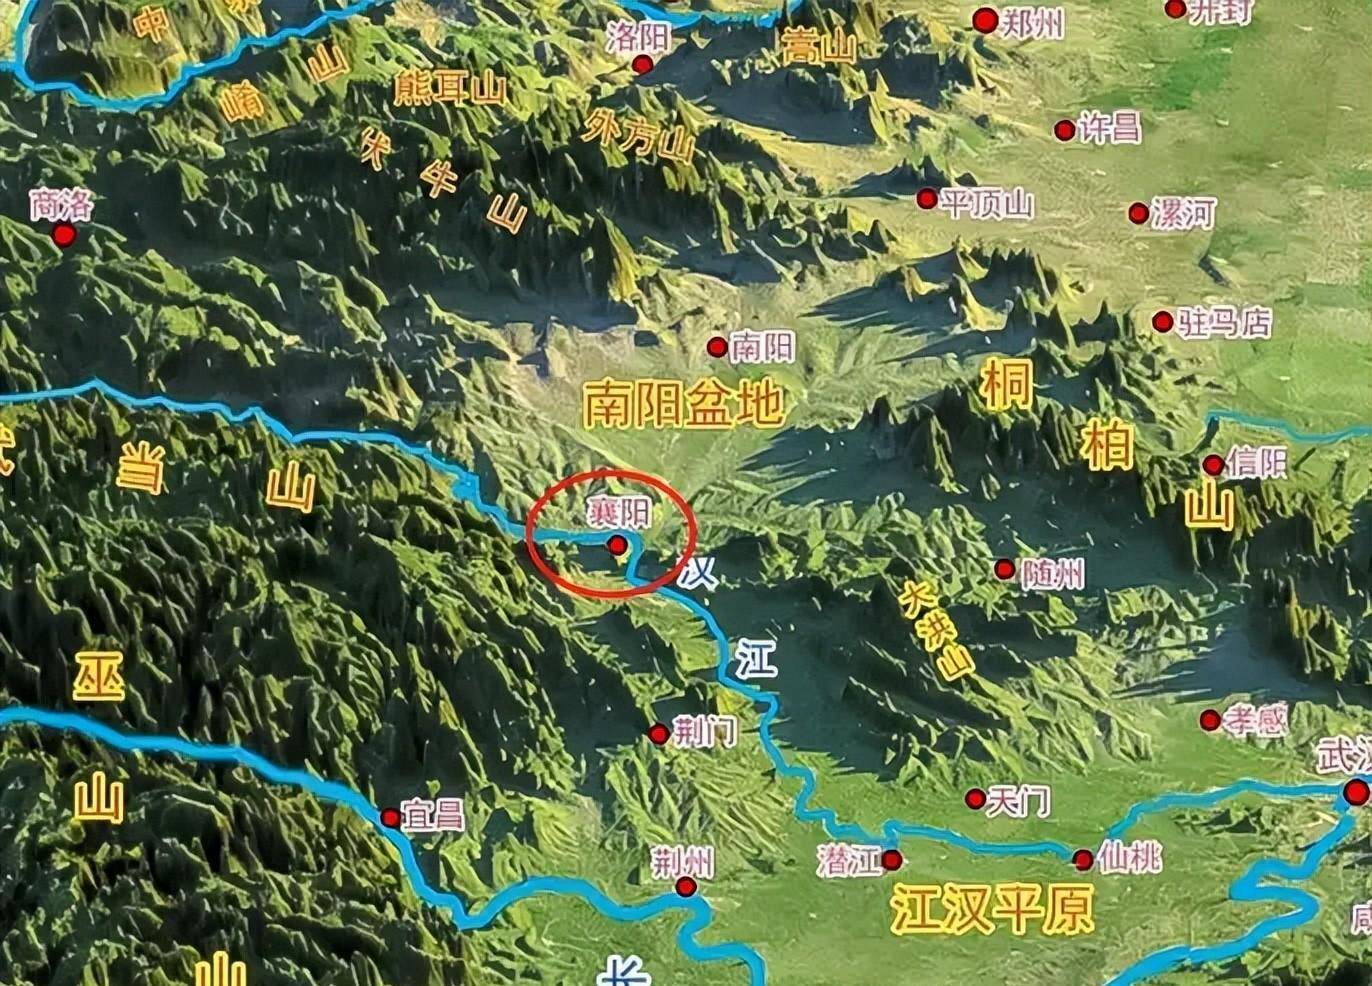 襄阳是长江江防北屏障的薄弱环节宋金对峙时期,南宋控制了整个江淮